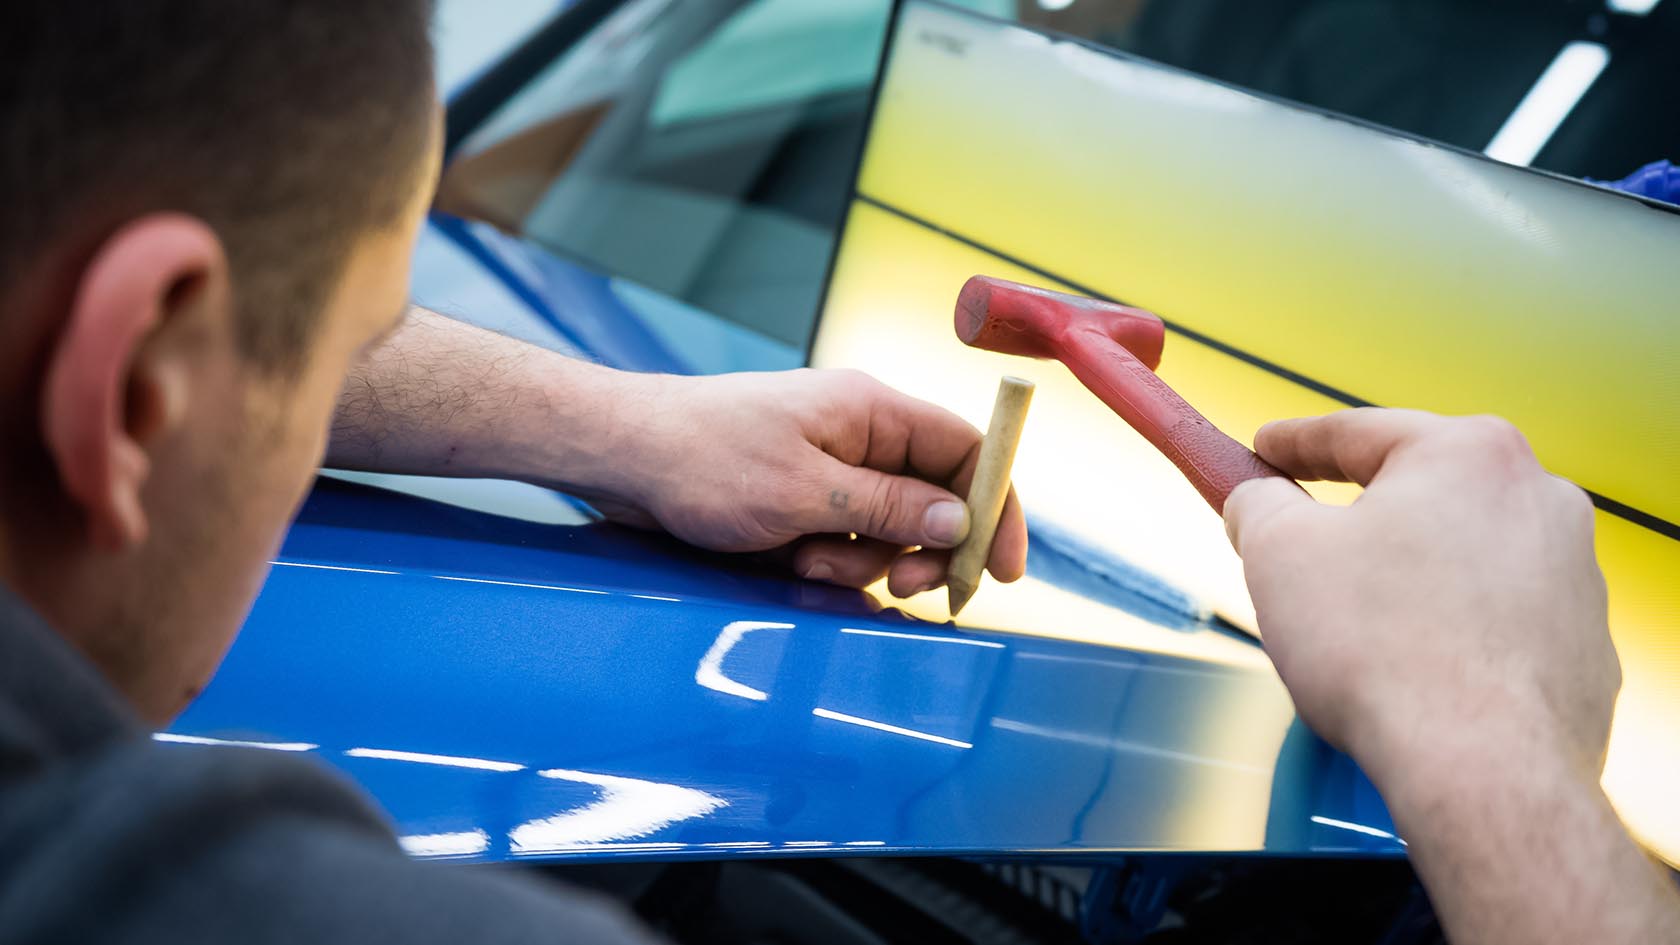 Как самостоятельно удалить вмятины на автомобиле без покраски + Видео